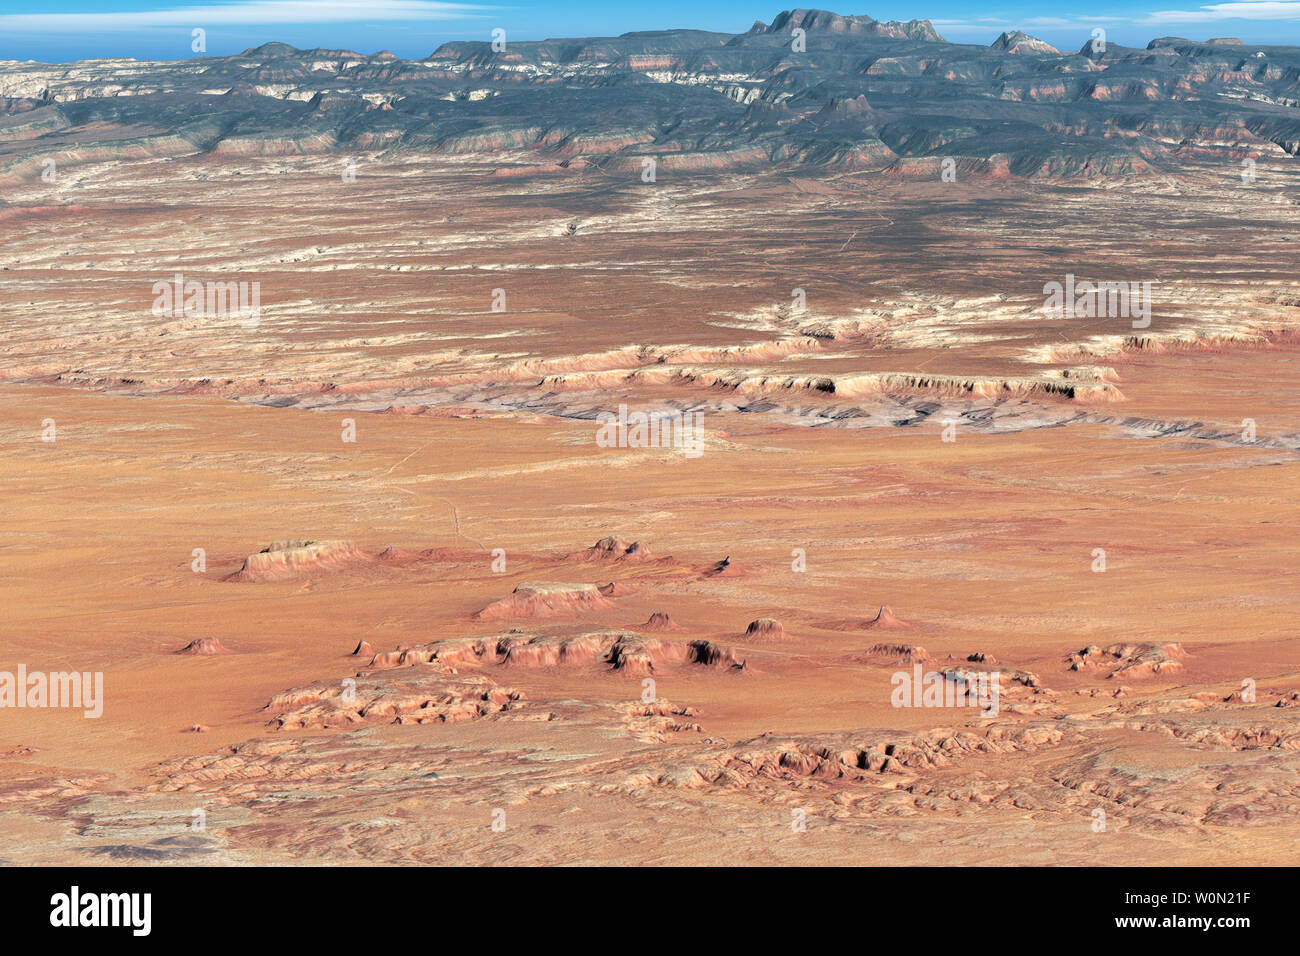 Wohl eines der am meisten fotografierten Orte auf der Erde, das Monument Valley ist das vollkommene Bild des amerikanischen Westens. Das Tal erstreckt sich über 92.000 Hektar entlang der Grenze von Arizona und Utah. Diese natürliche Farben zusammengesetzte Bild gibt ein Gefühl der Topographie des Tales. Das Bild wurde aus Daten, die von den operativen Land Imager (OLI) auf Landsat 8 ab 8. Mai 2018 erworben, und aus einem digitalen Höhenmodell (dem Nationalen Elevation Dataset der U.S. Geological Survey). NASA/UPI Stockfoto